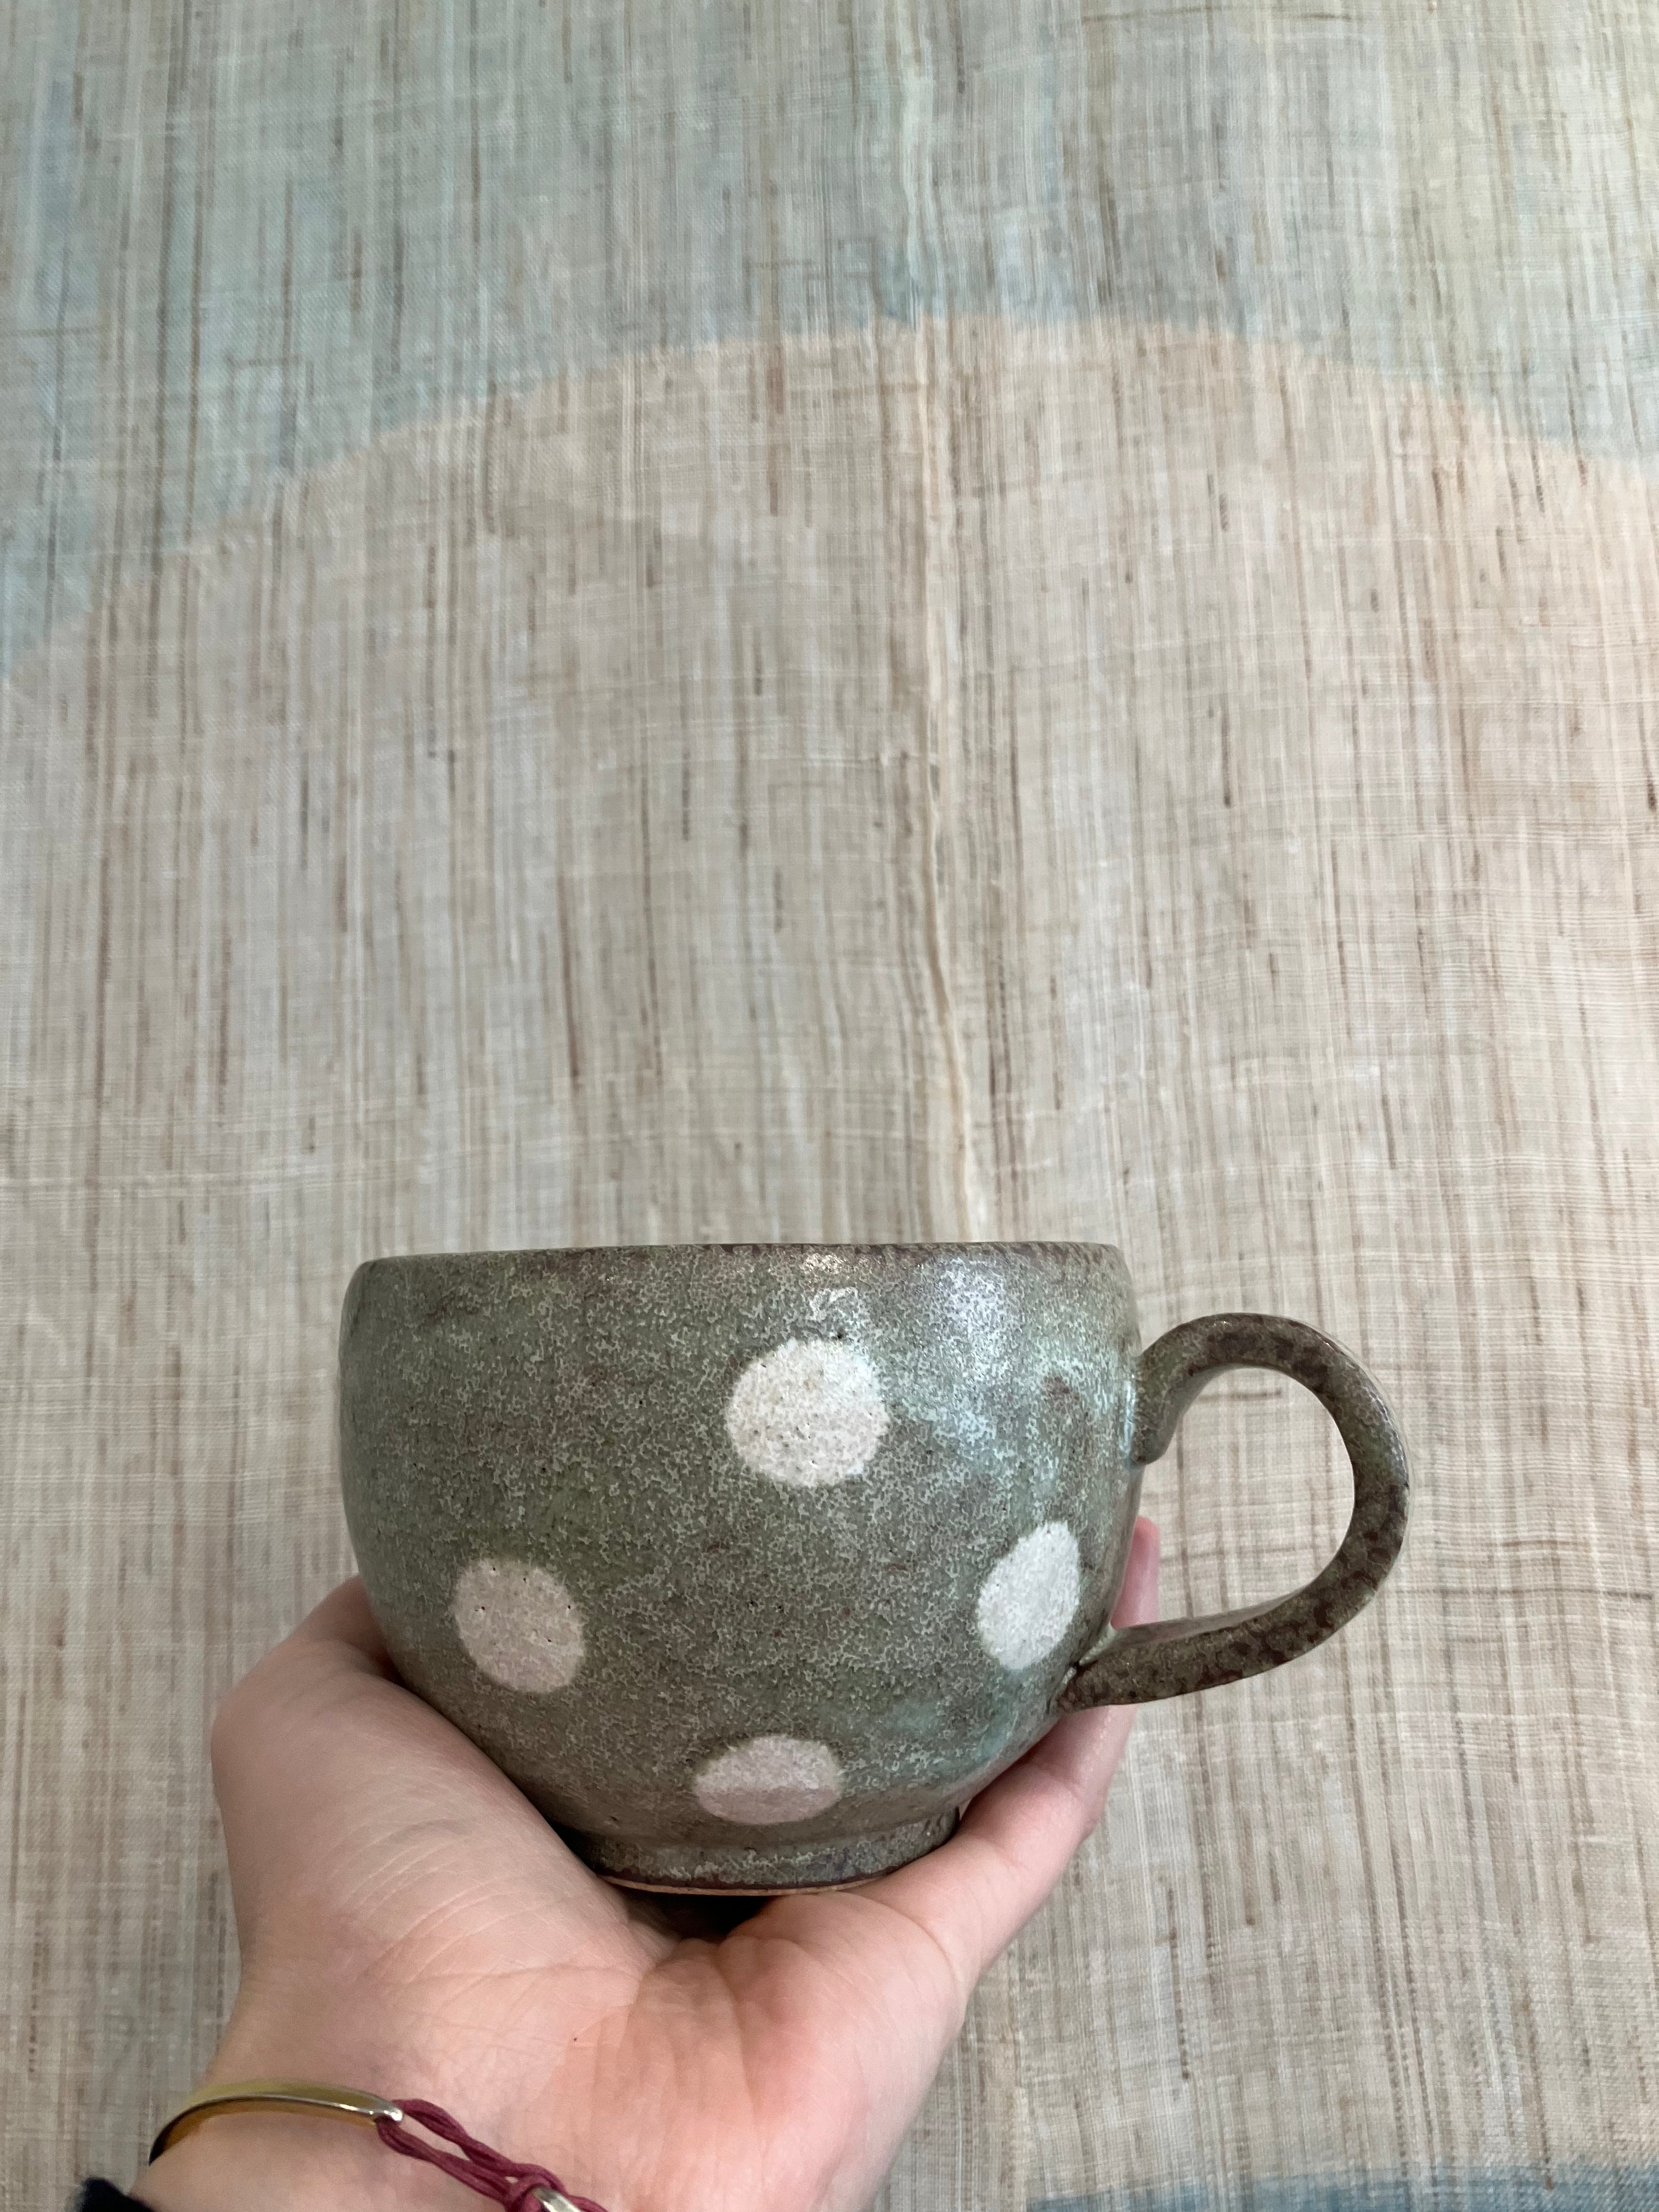 Japansk keramik kop med grøn glasur og hvide prikker